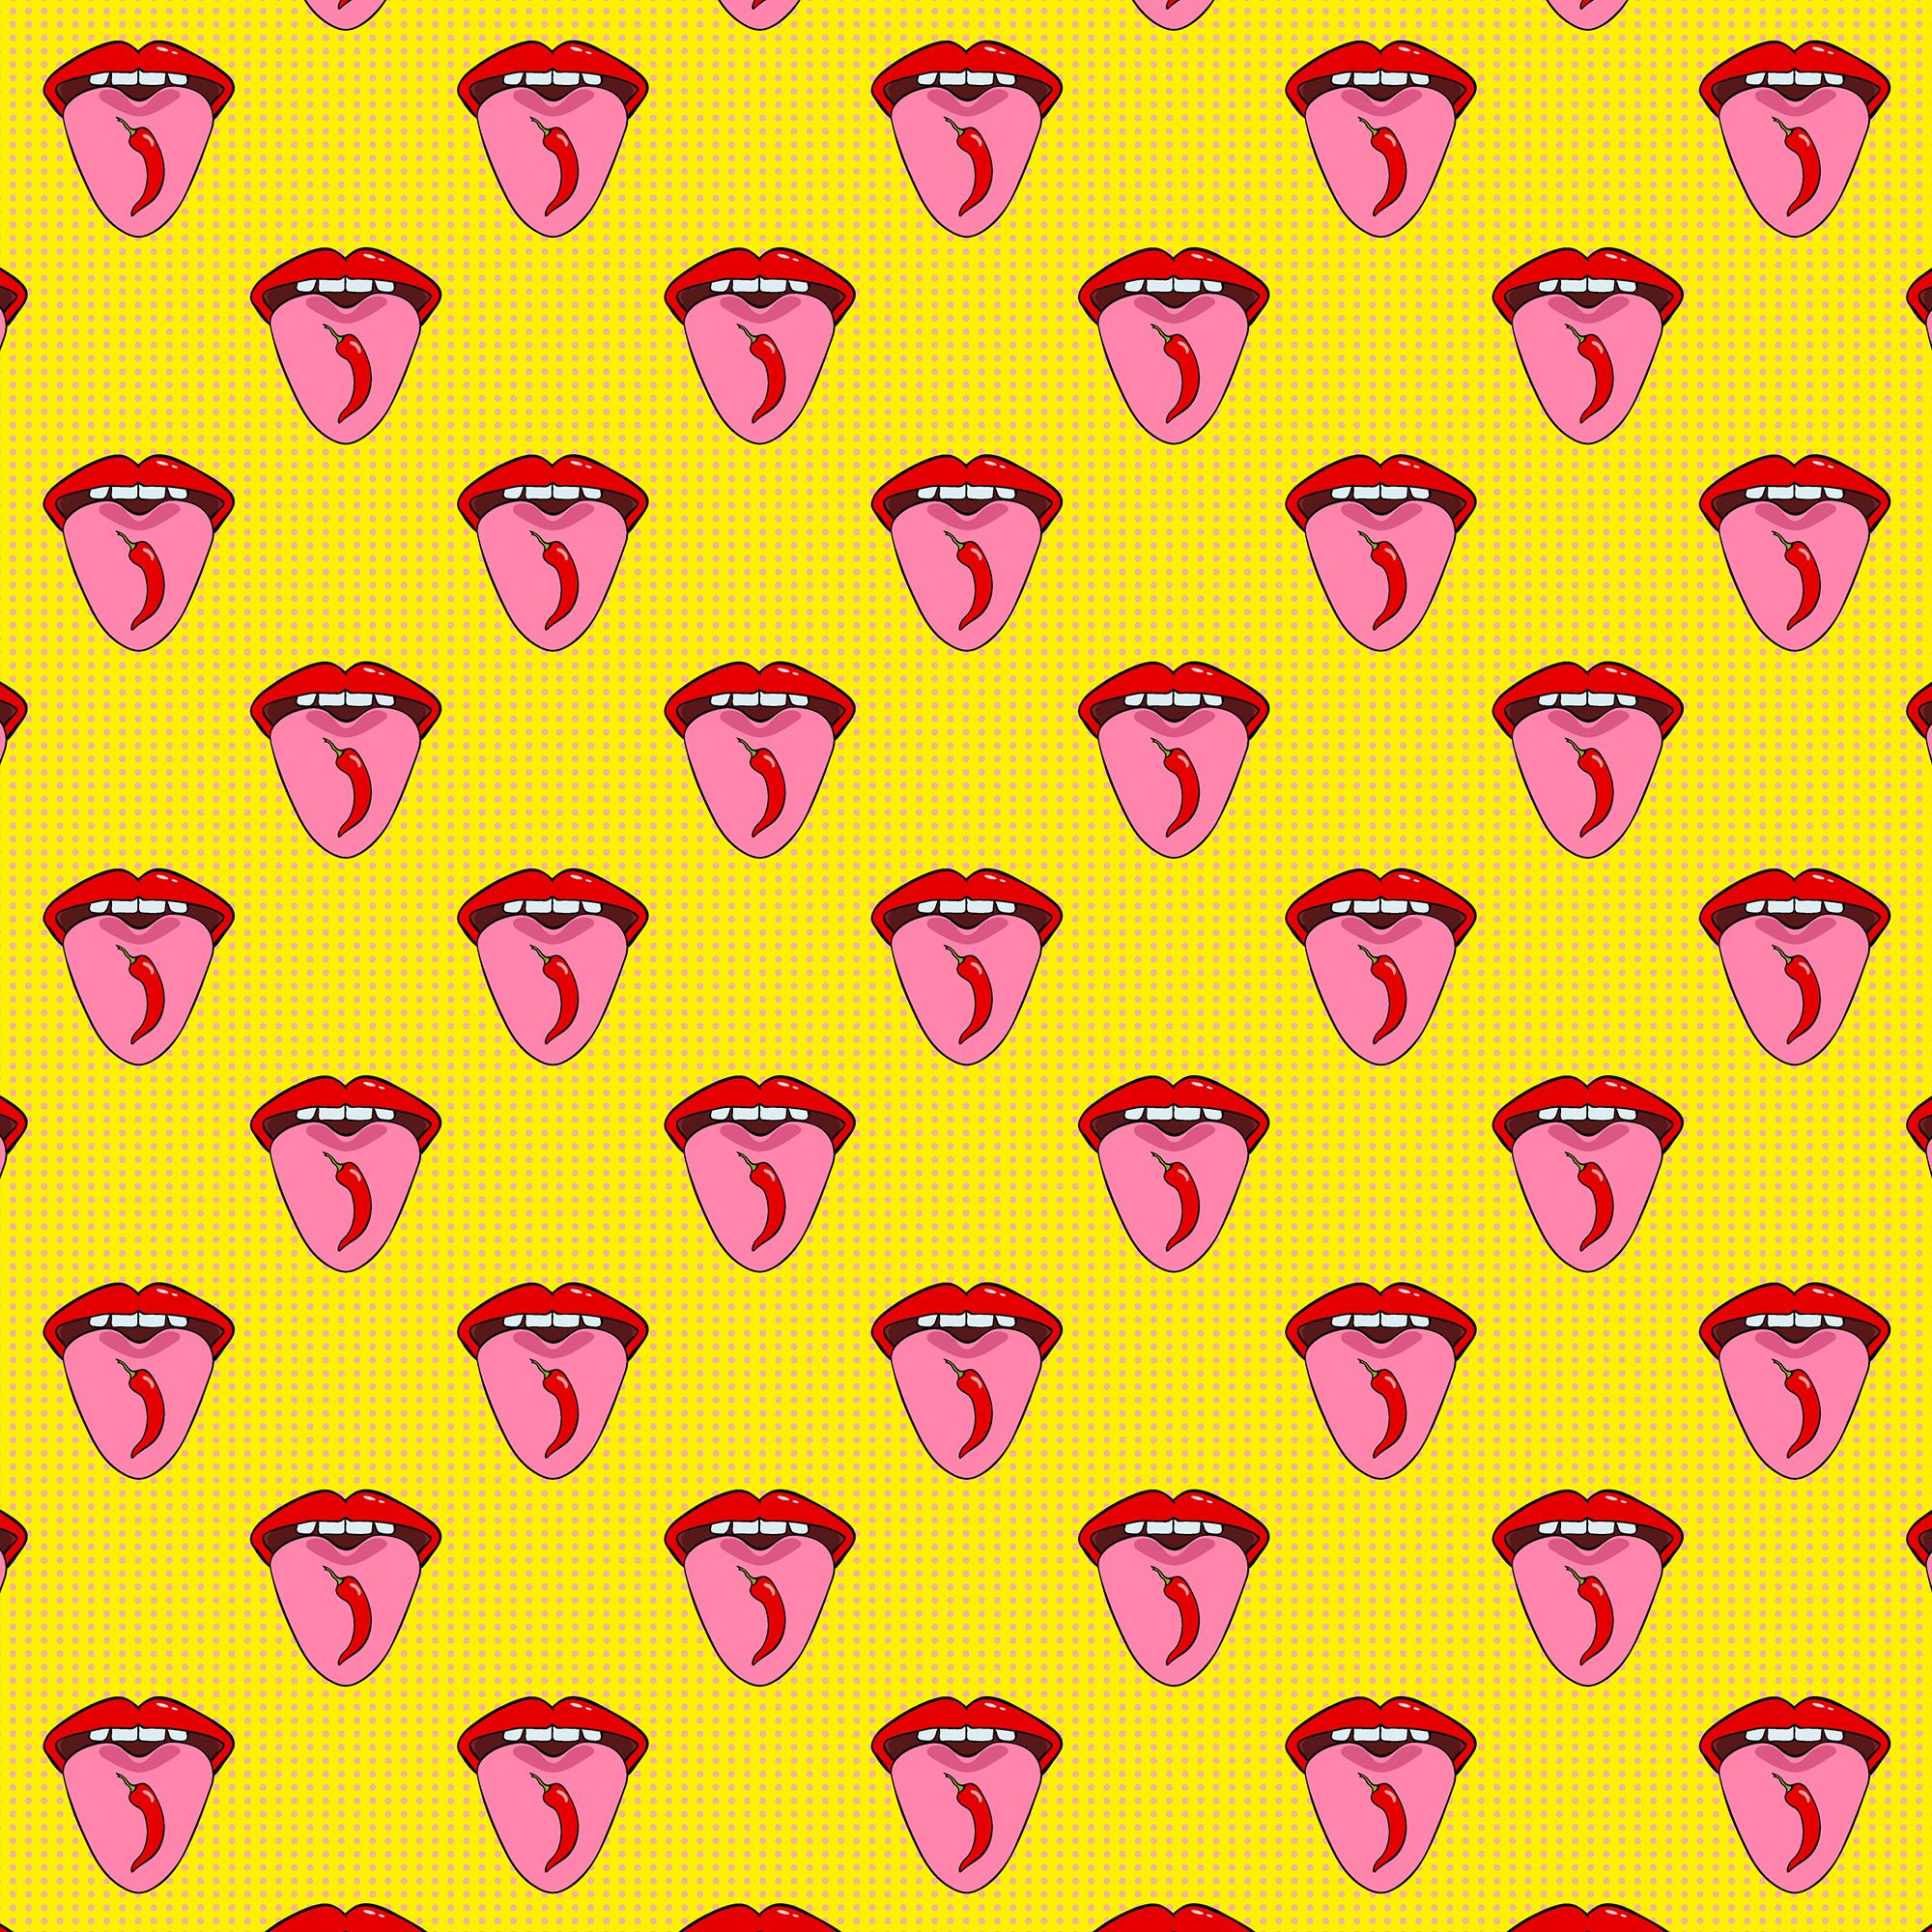 Münder mit ausgestreckte Zungen mit einer Chili-Schote auf gelb-gepunktetem Hintergrund